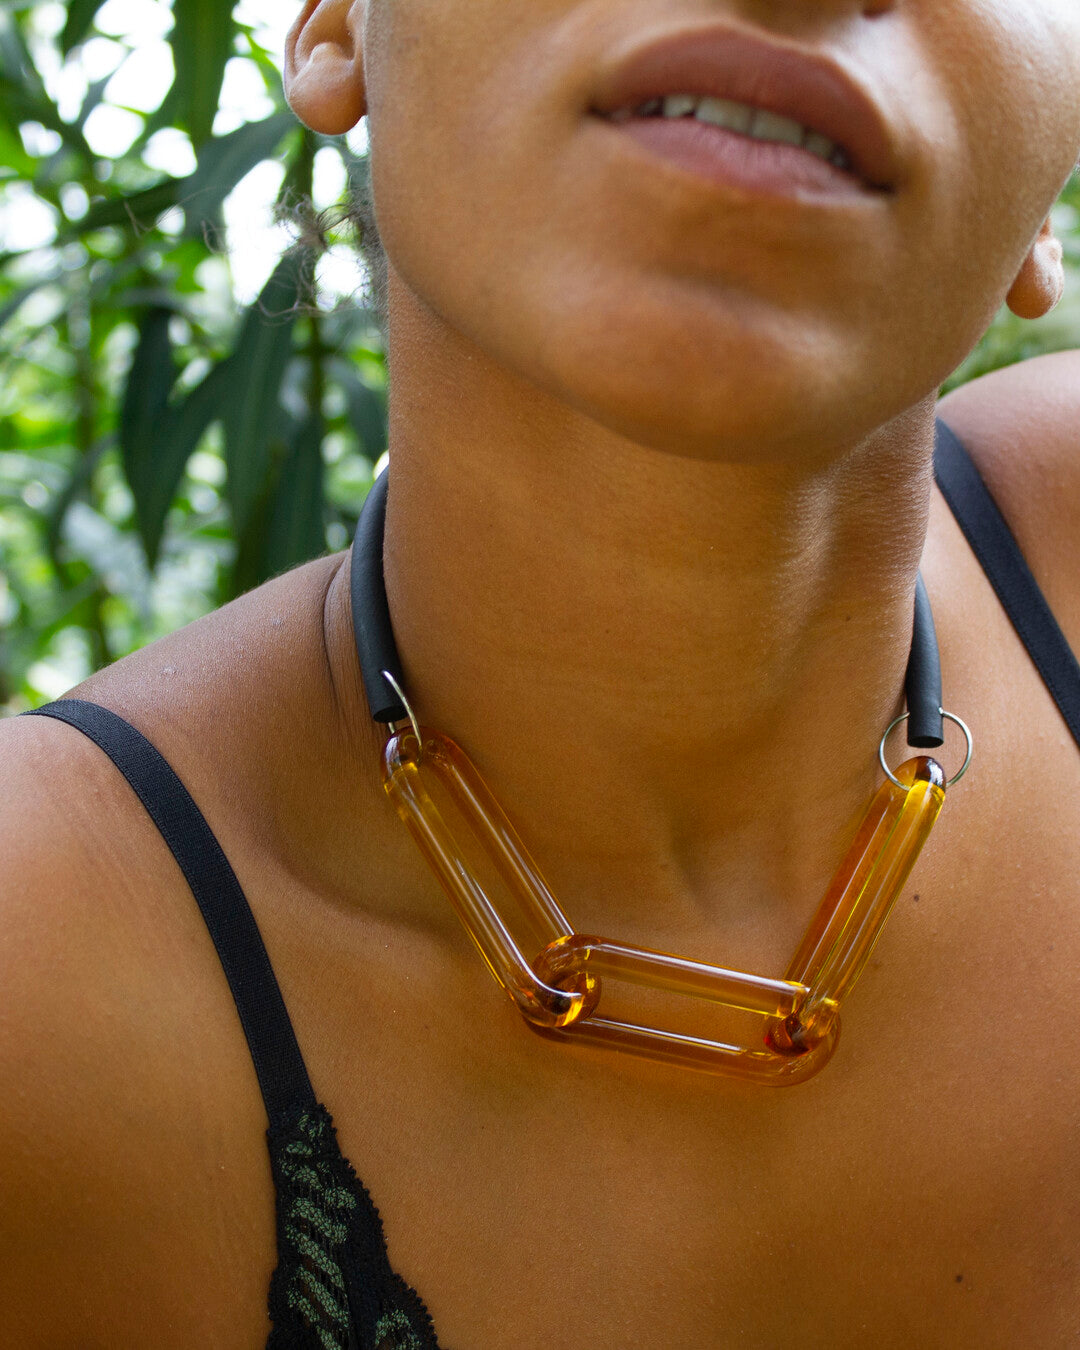 Handmade glass necklace - SiO2 Glass Jewelry